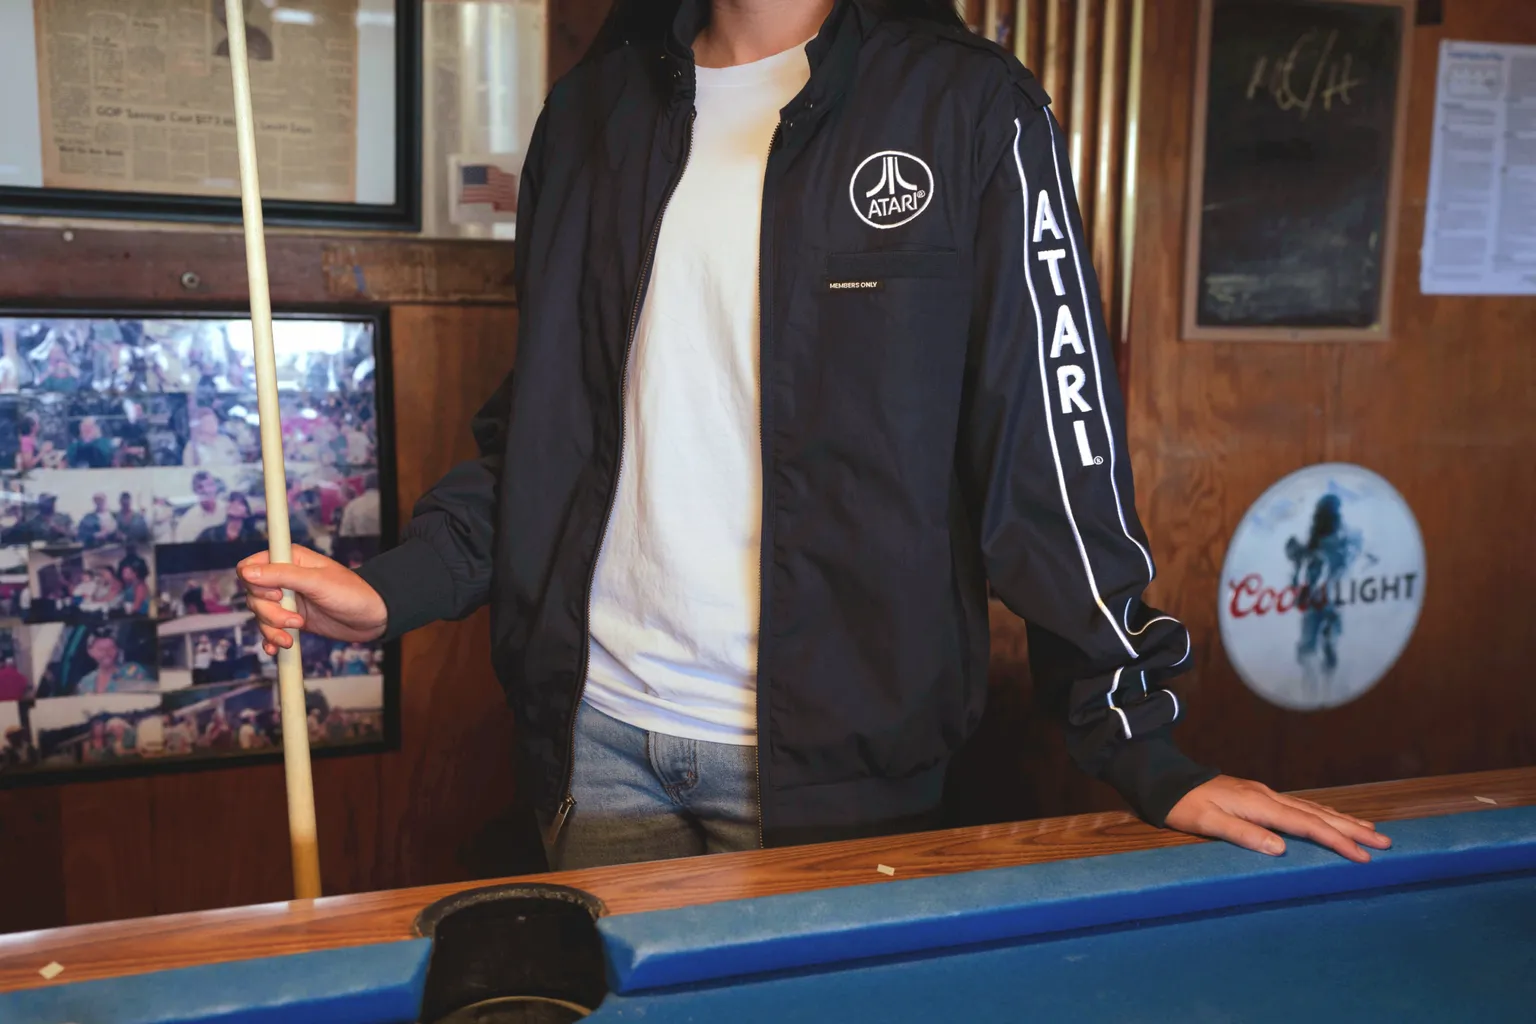 Fotografia de um homem do pescoço para baixo vestindo uma jaqueta Atari azul-marinho e prata aberta com uma camiseta branca por baixo. Ele segura um taco de sinuca e tem uma das mãos apoiada em uma mesa de sinuca azul.